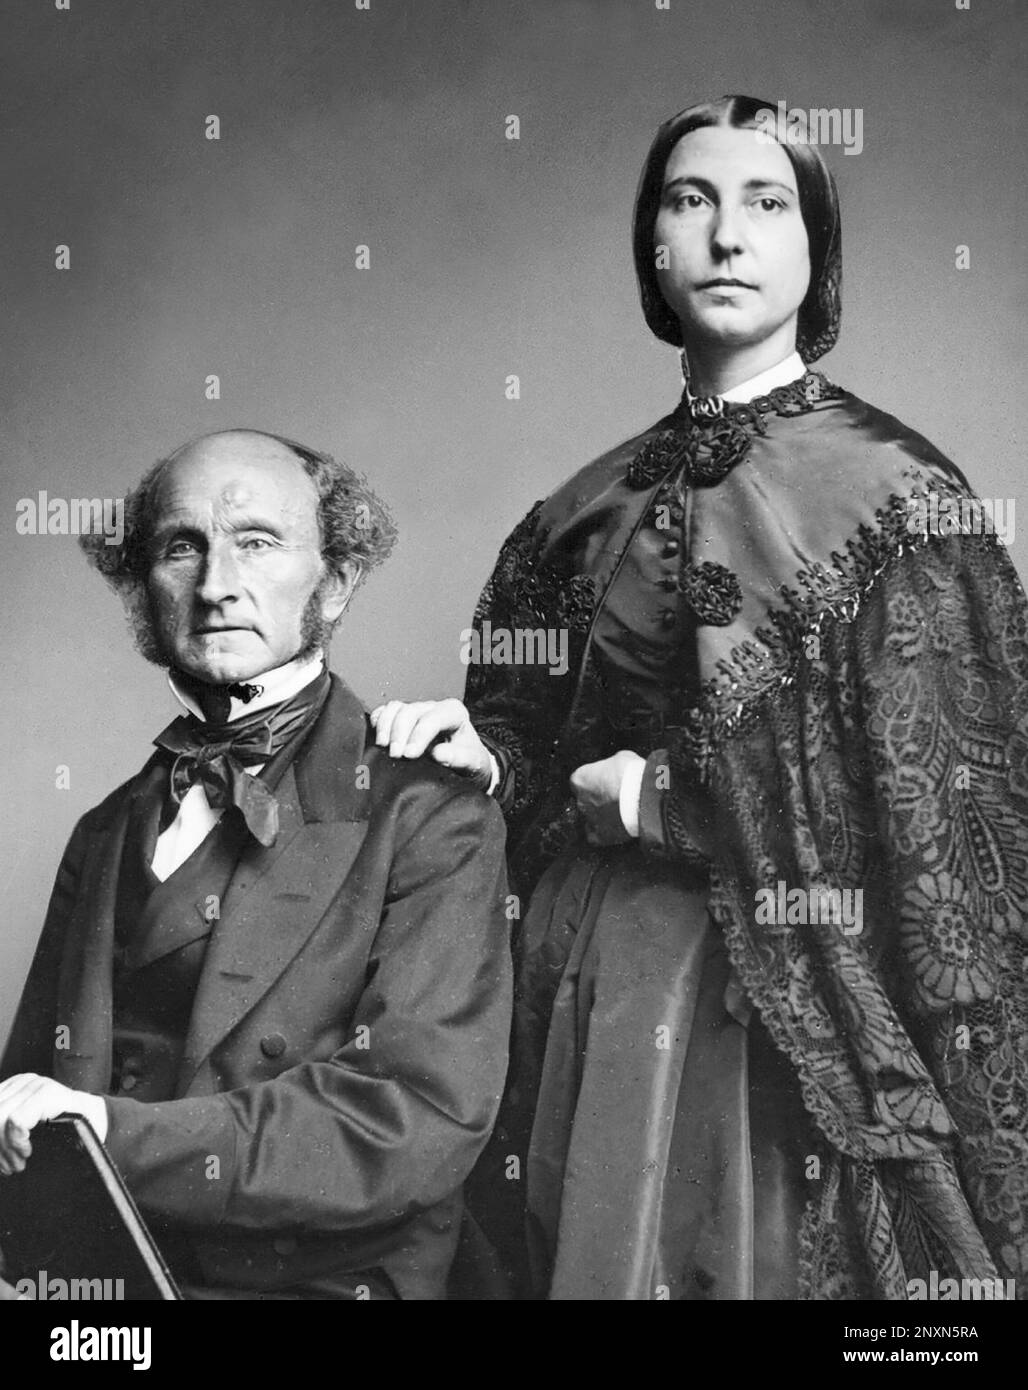 John Stuart Mill (1806-1873) war ein englischer Philosoph, politischer Ökonom, Abgeordneter und Beamter. Helen Taylor (1831-1907) war eine englische Feministin, Schriftstellerin, Schauspielerin und Stieftochter von John Stuart Mill. Nach dem Tod ihrer Mutter arbeitete sie mit Mill für Frauenrechte. Stockfoto